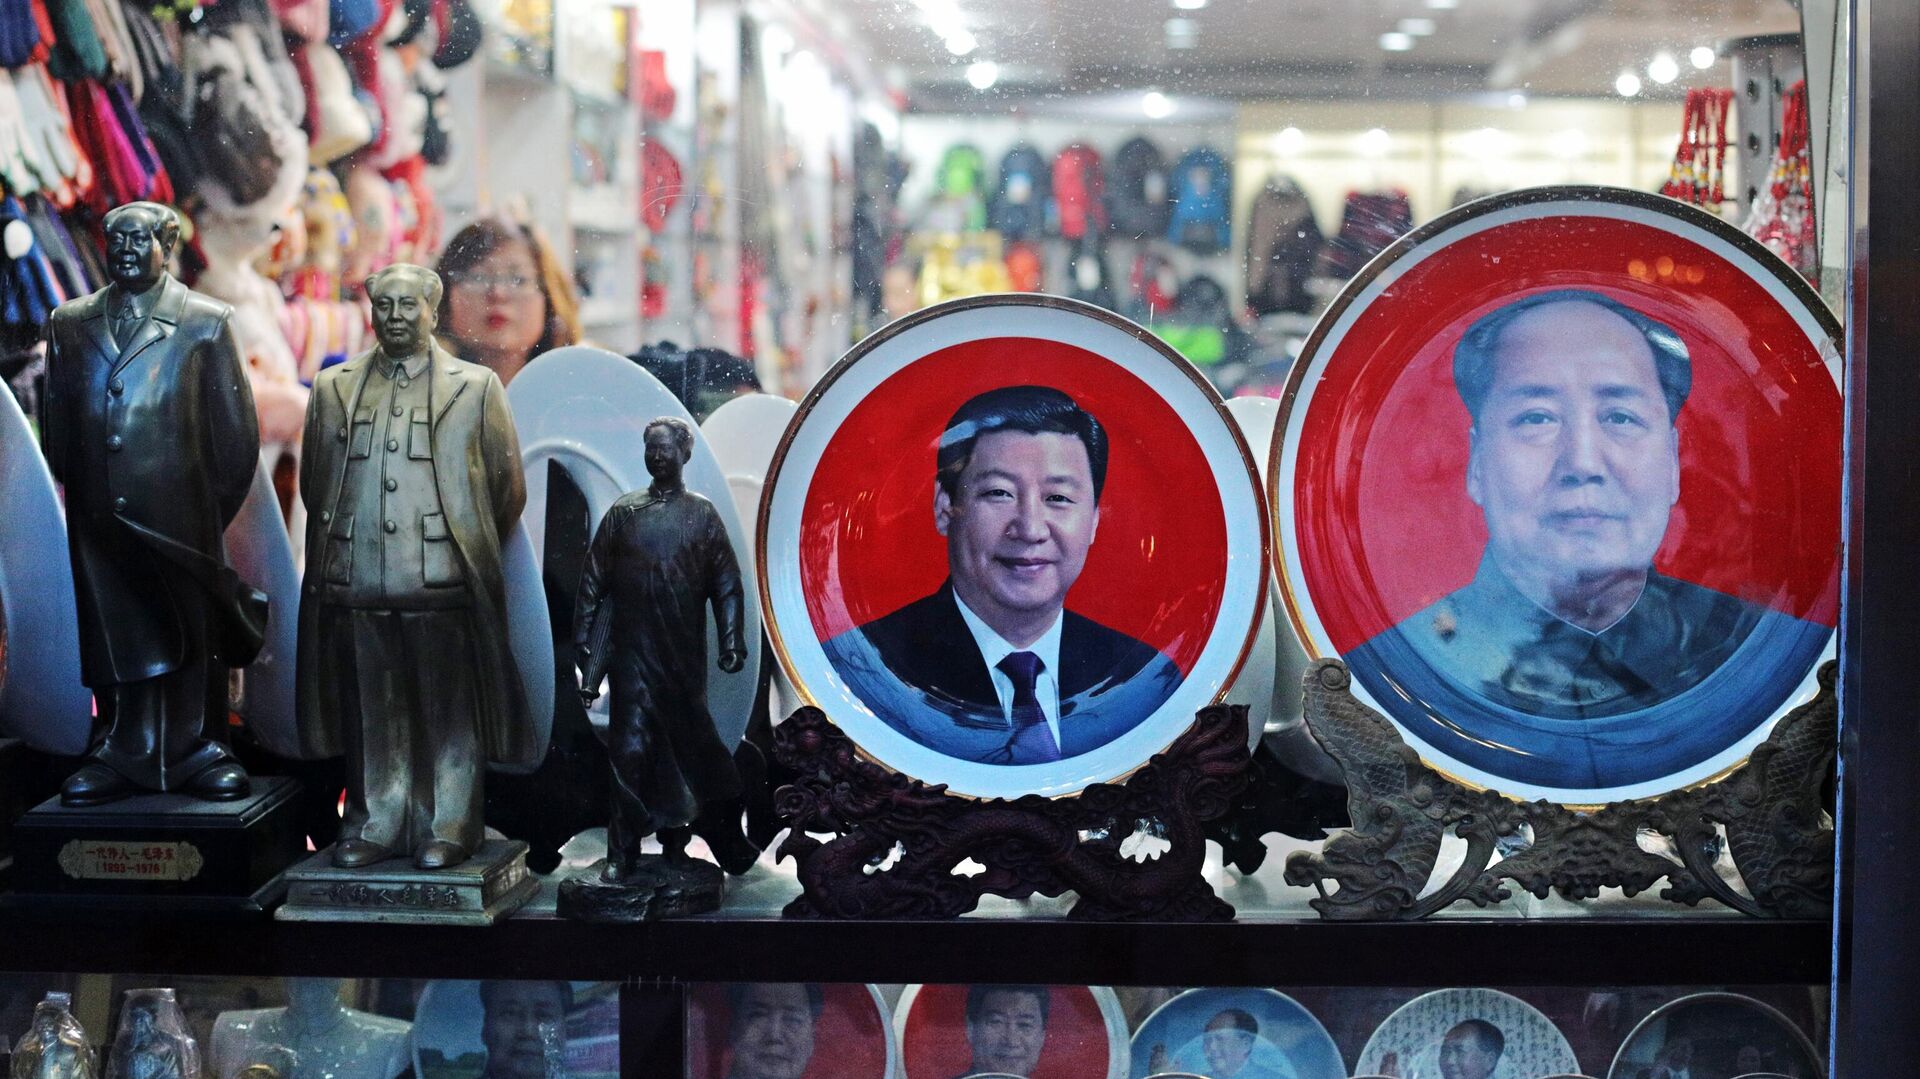 Продажа сувенирных тарелок и фигурок с портретами Мао Цзэдуна и Си Цзиньпина в Пекине - Sputnik Таджикистан, 1920, 30.12.2021